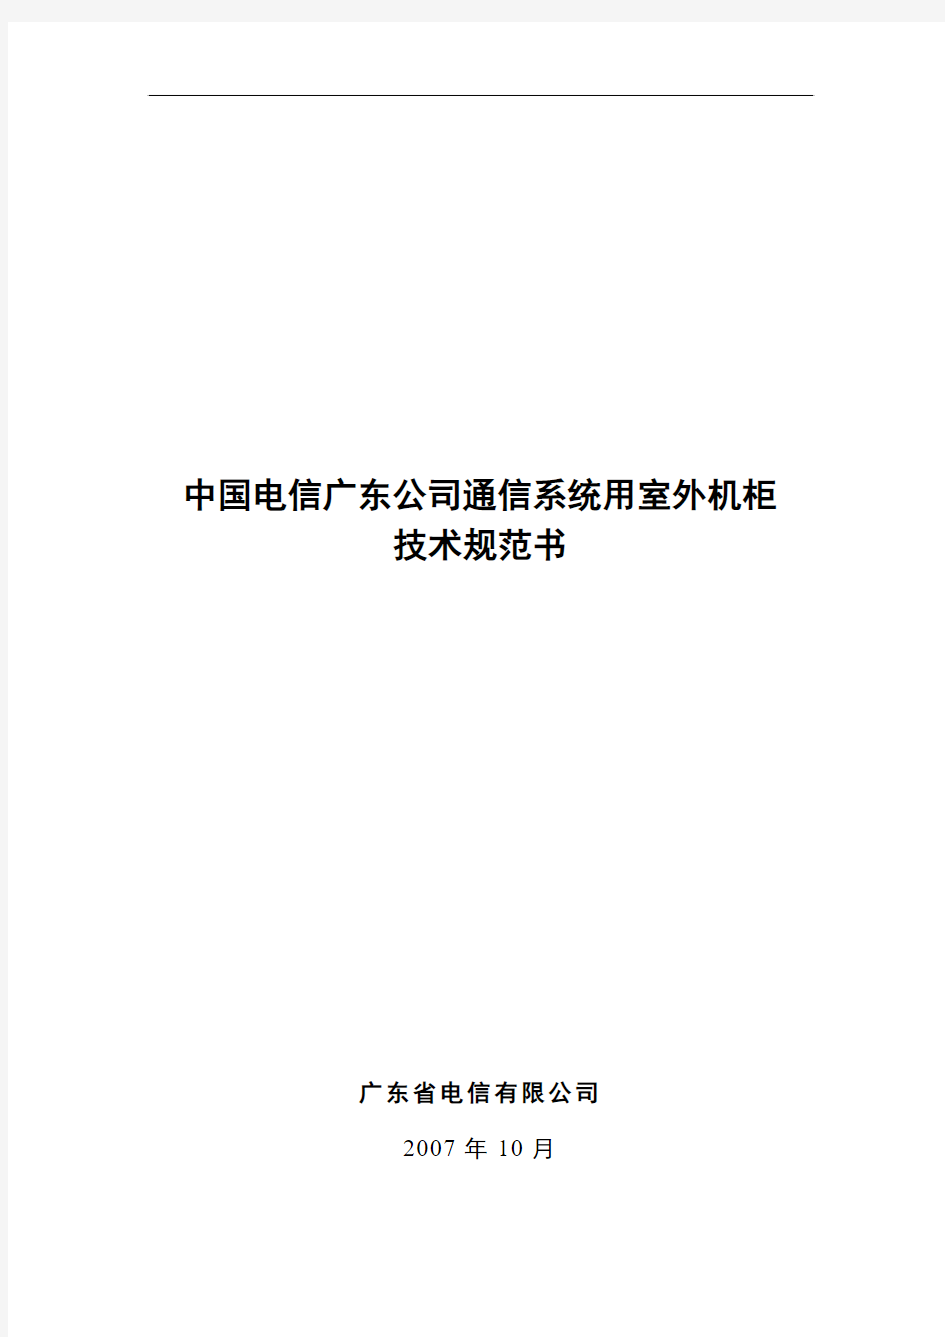 中国电信广东公司通信系统用室外机柜技术规范书